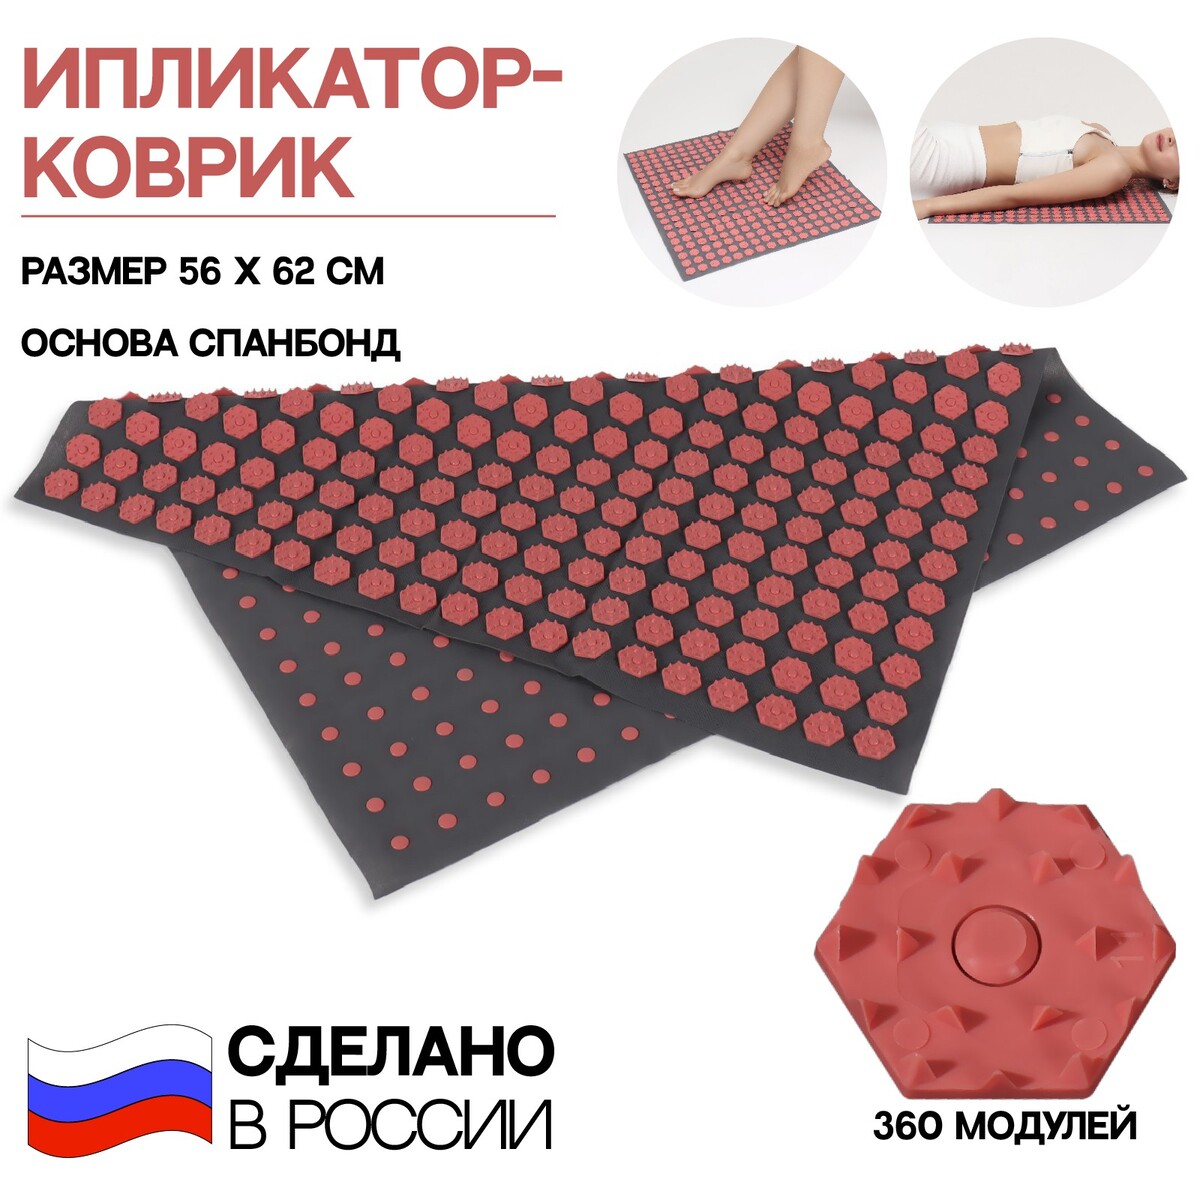 Ипликатор-коврик, основа спанбонд, 360 модулей, 56 × 62 см, цвет темно-серый/красный ONLITOP